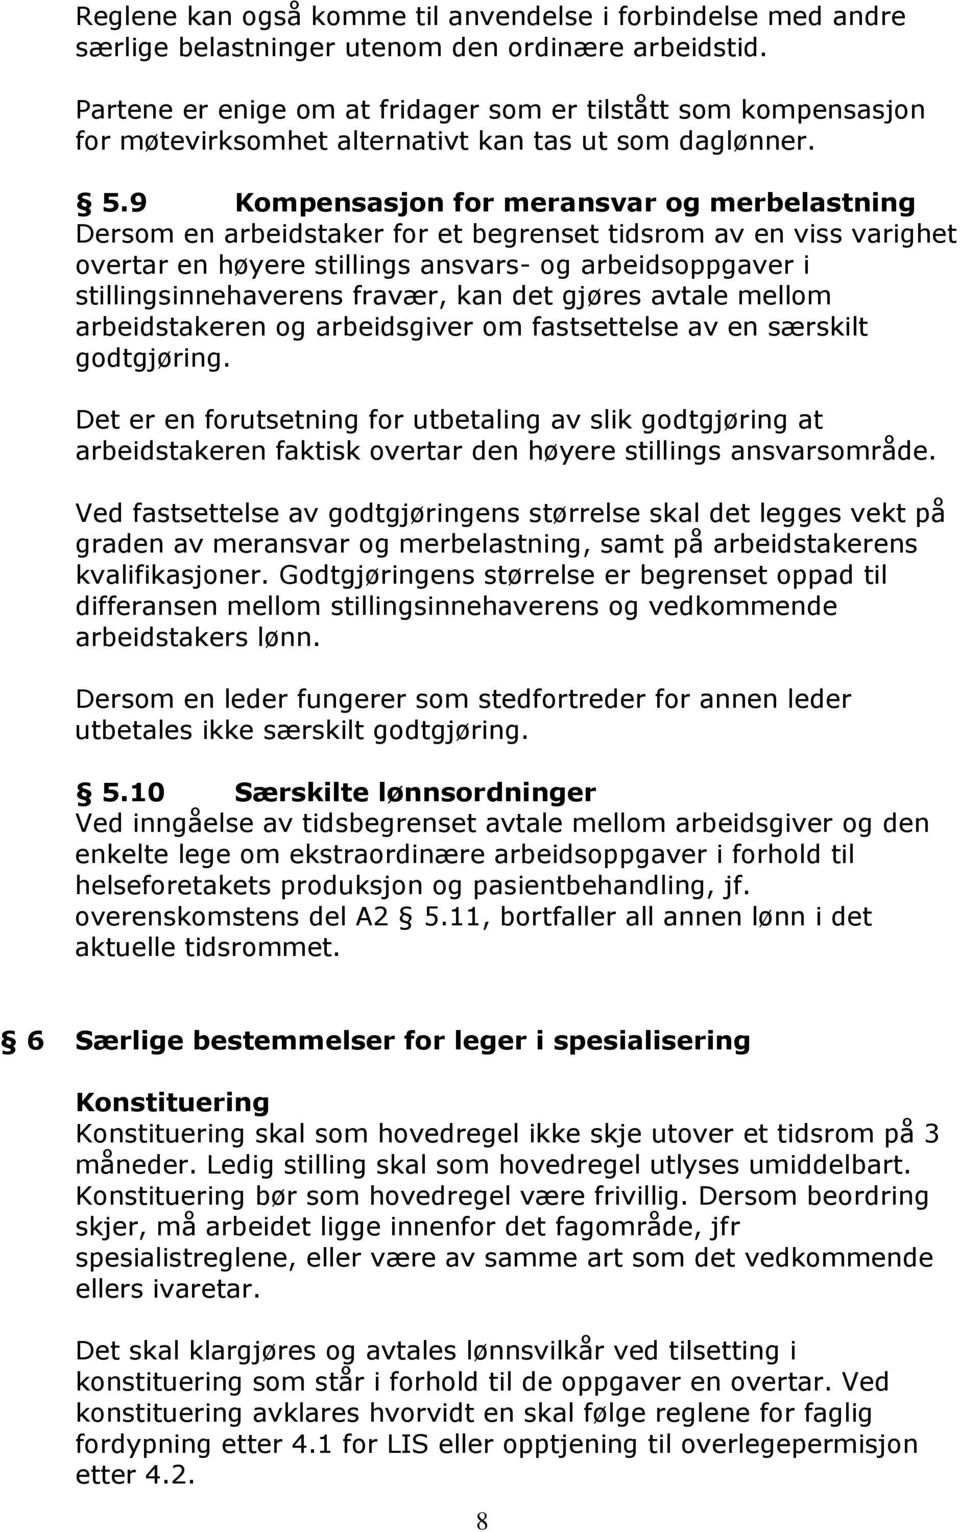 OVERENSKOMST DEL B MELLOM. SiV HF Klinikk psykisk helse og rusbehandling  DEN NORSKE LEGEFORENING - PDF Free Download